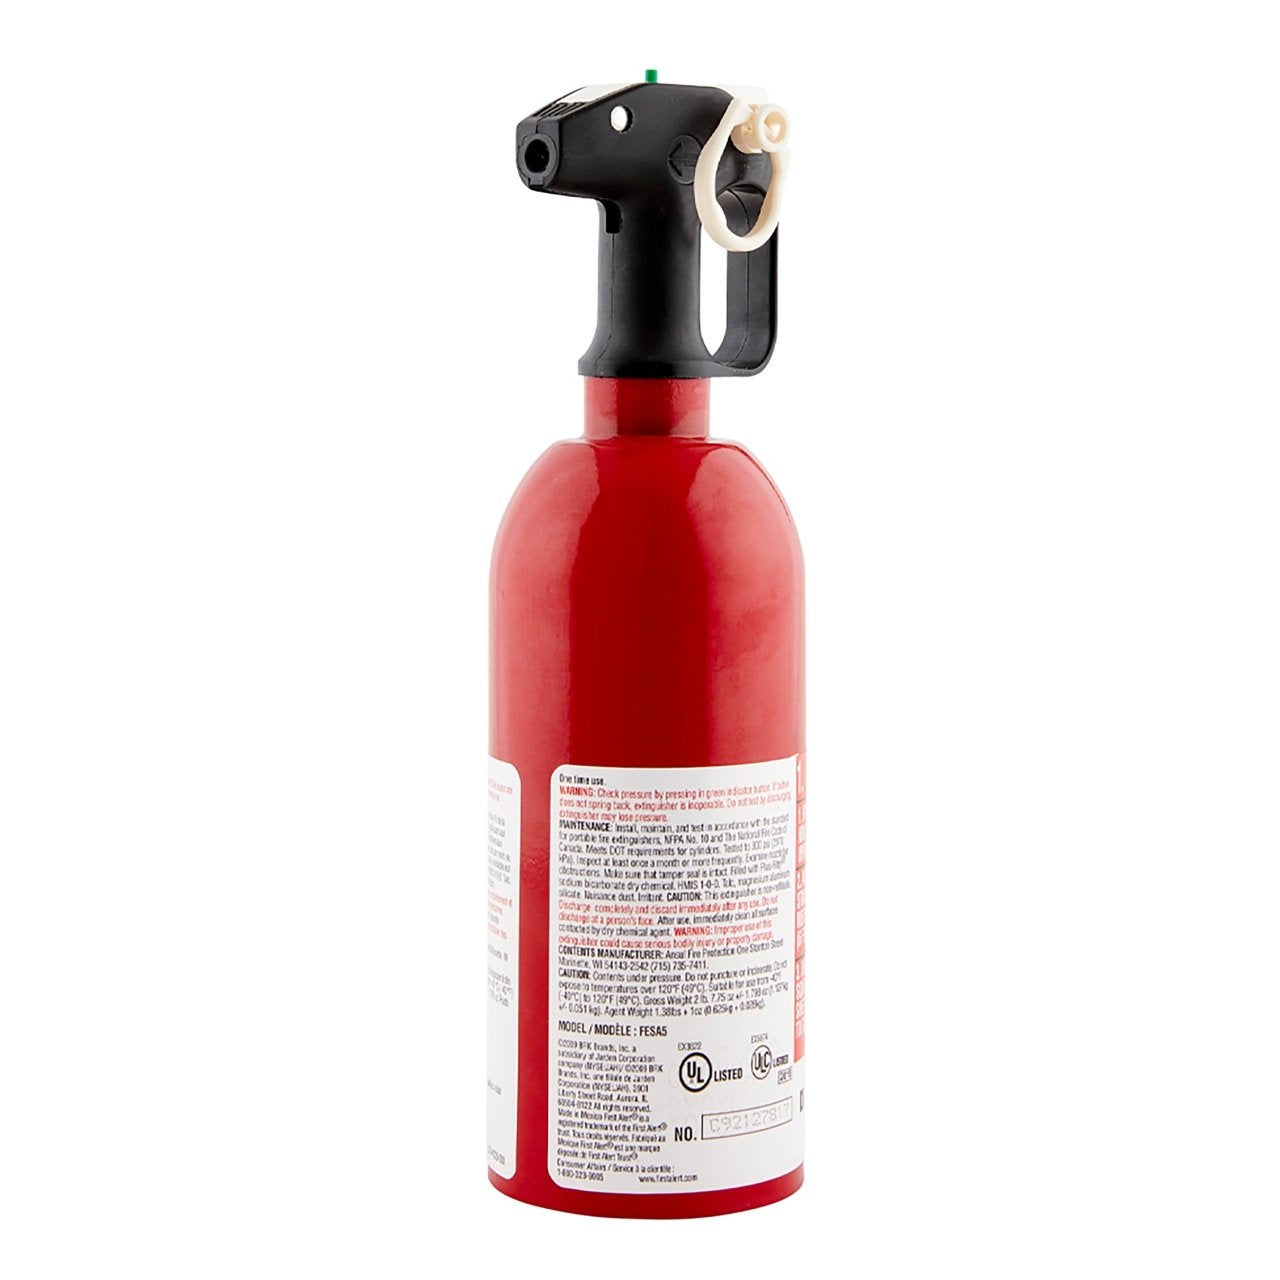 First Alert Auto Fire Extinguisher